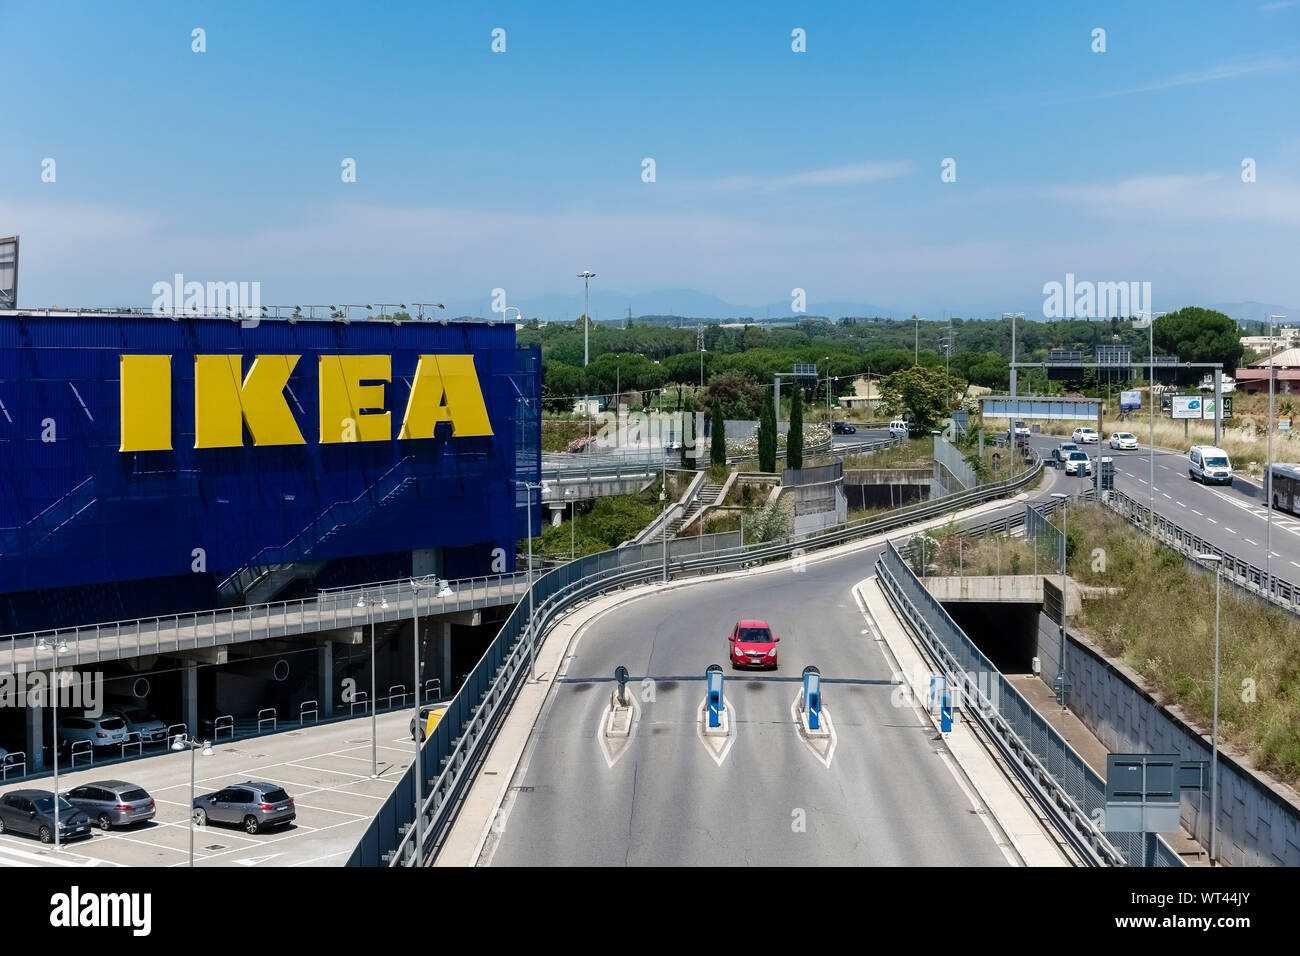 Ikea italy immagini e fotografie stock ad alta risoluzione - Alamy